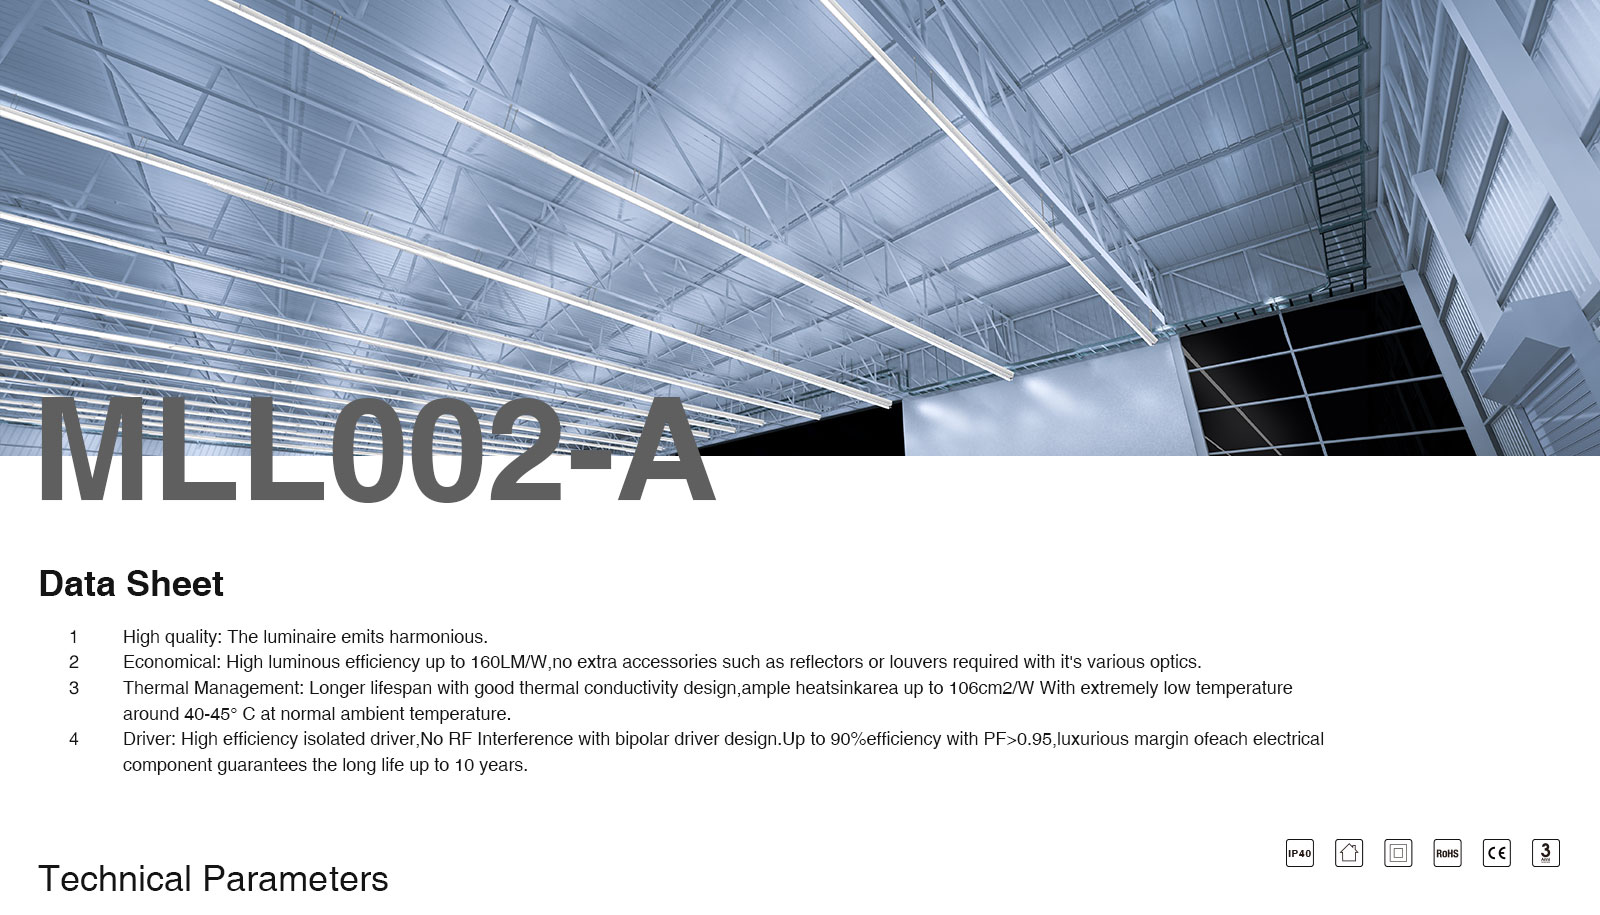 በጅምላ 50 ዋ/4000 ኪ/ነጭ ሊኒየር መብራት MLL002-A L0110B- ይግዙKOSOOM-Linear High Bay LED መብራቶች--ML00201